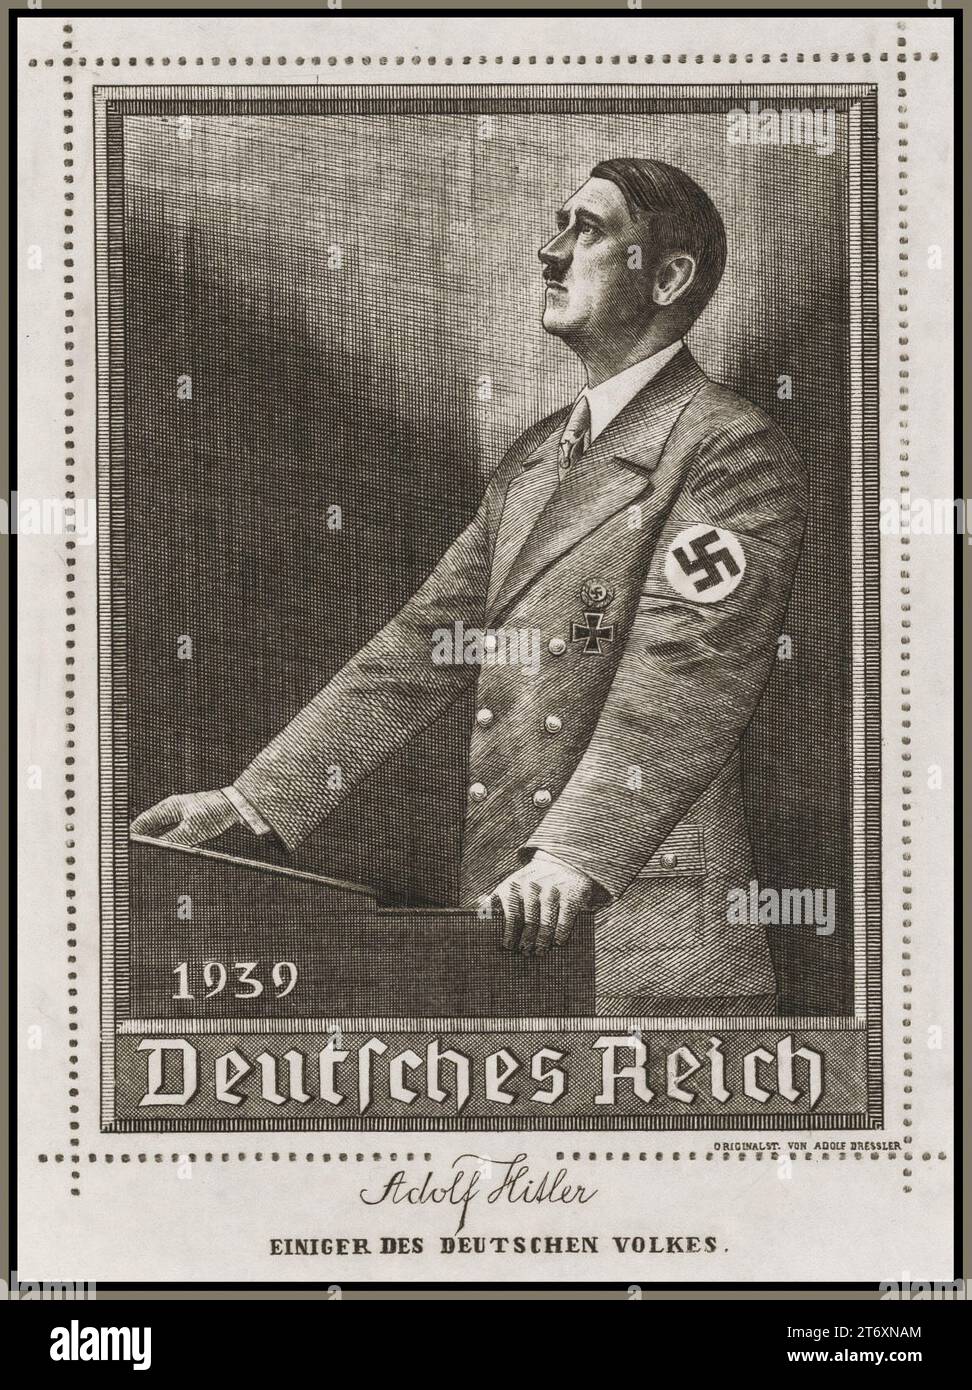 Adolf Hitler illustration 1939 'DEUTCHES REICH' (German Empire) by artist Adolf Dressler Stock Photo